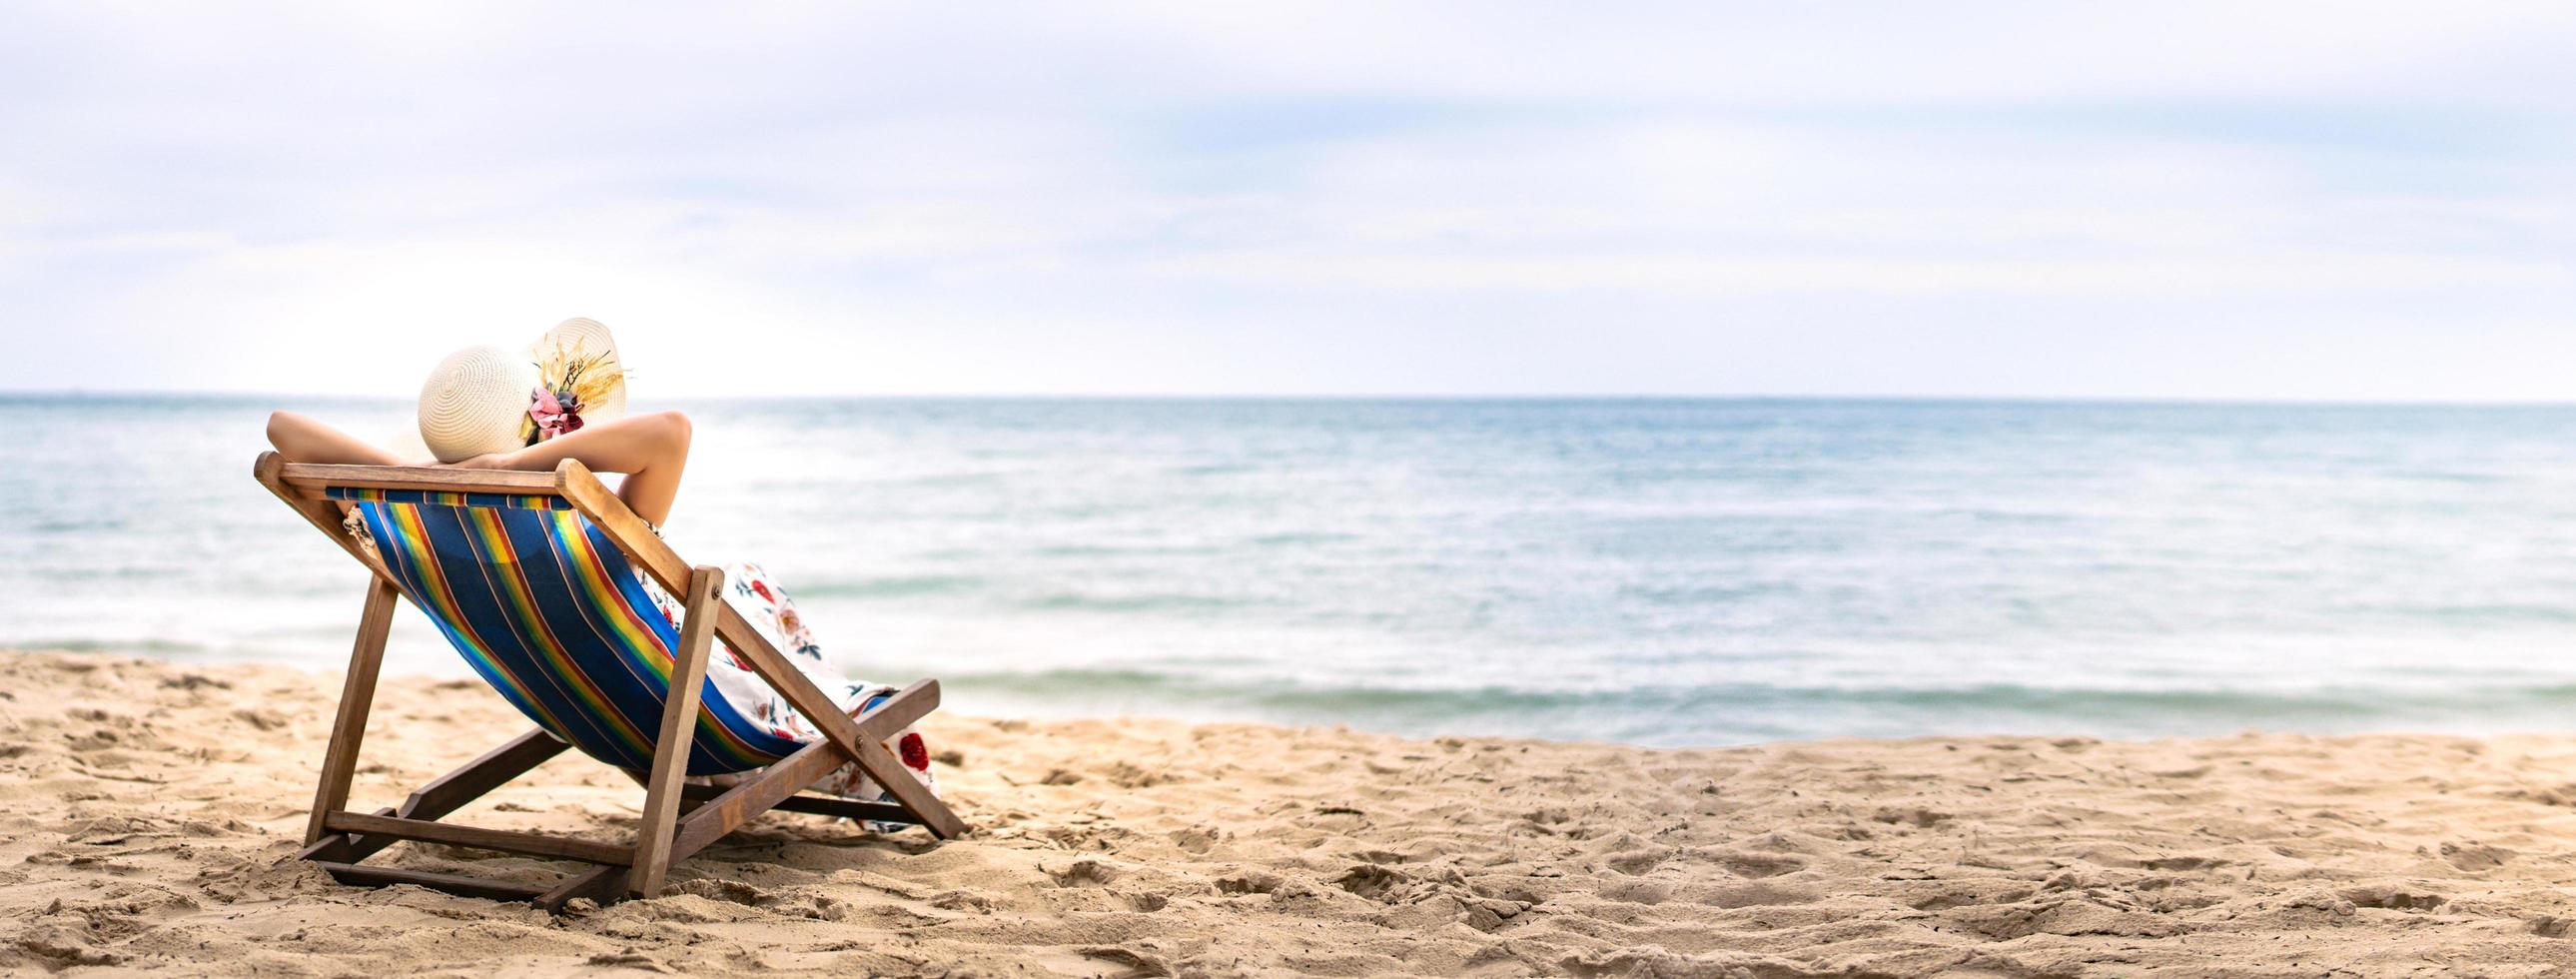 jovem mulher asiática relaxante na cadeira de praia com espaço de cópia foto